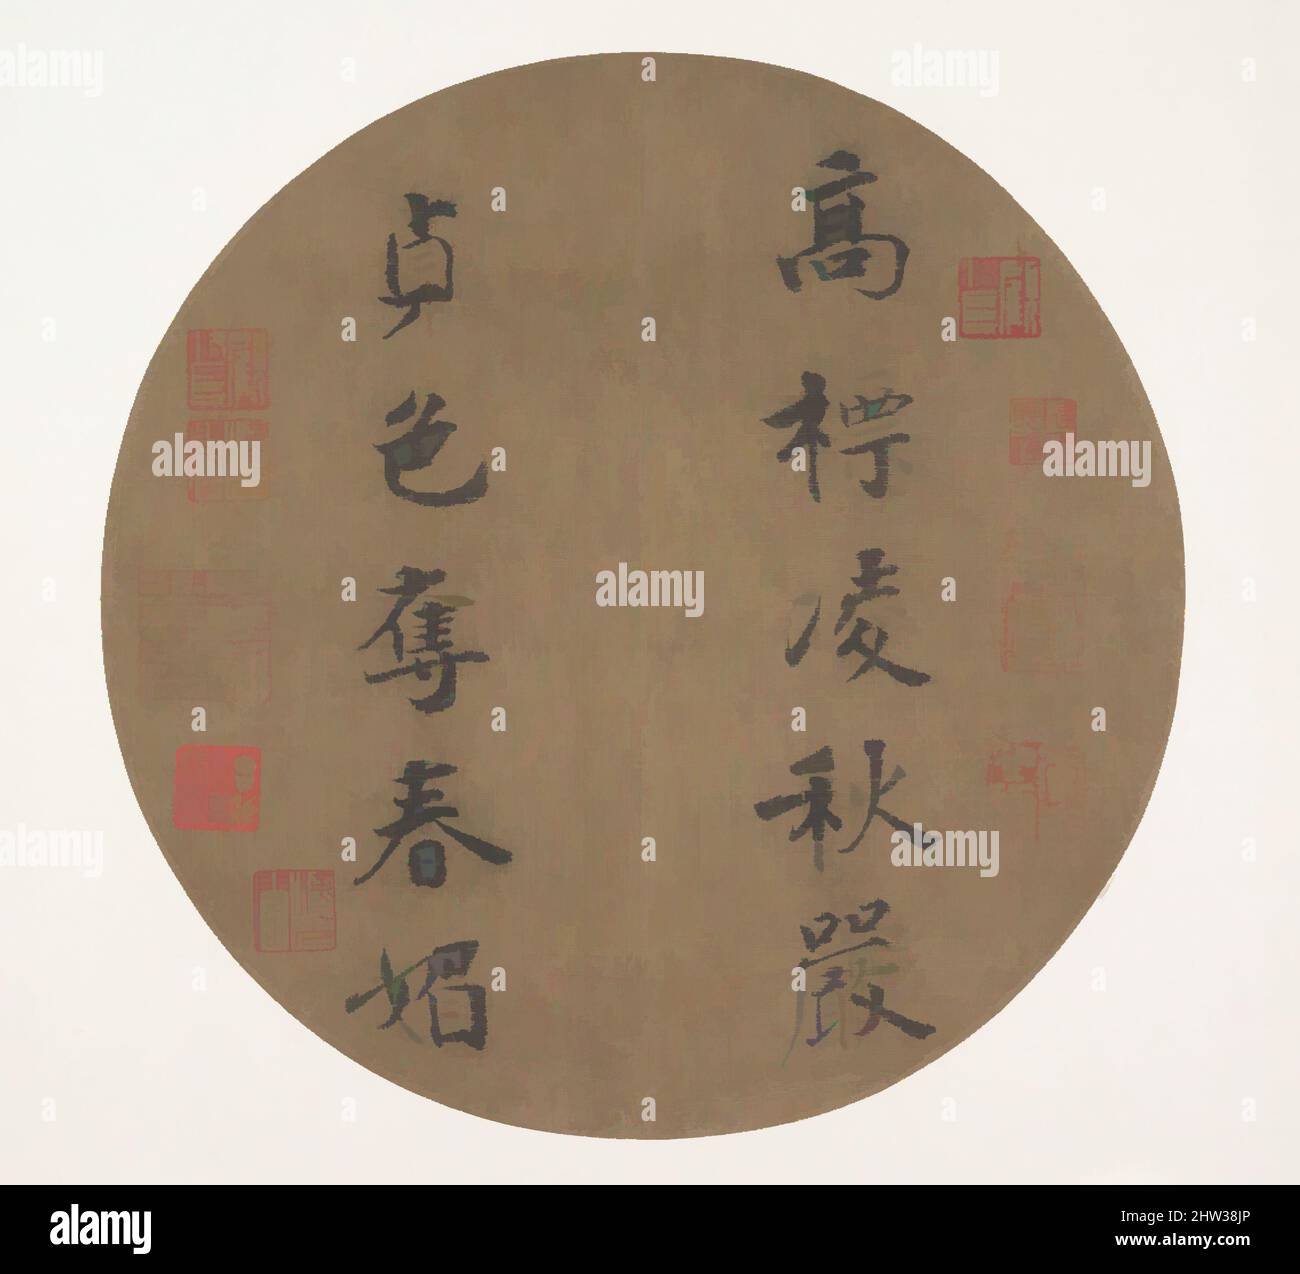 Art Inspired by 南宋 傳光宗 行楷書高標貞色聯句 團扇, Couplet by Han Yu, Song Dynasty (960–1279), China, Fan Mounted as an album Leaf; Ink on Silk, 8 3/8 x 8 1/4" (21,3 x 21 cm), Calligraphy, attribuito all'imperatore Guangzong (cinese, 1147–1200, r. 1190–94), questa scrittura è legata alle normali opere classiche modernizzate da Artotop con un tuffo di modernità. Forme, colore e valore, impatto visivo accattivante sulle emozioni artistiche attraverso la libertà delle opere d'arte in modo contemporaneo. Un messaggio senza tempo che persegue una nuova direzione selvaggiamente creativa. Artisti che si rivolgono al supporto digitale e creano l'NFT Artotop Foto Stock